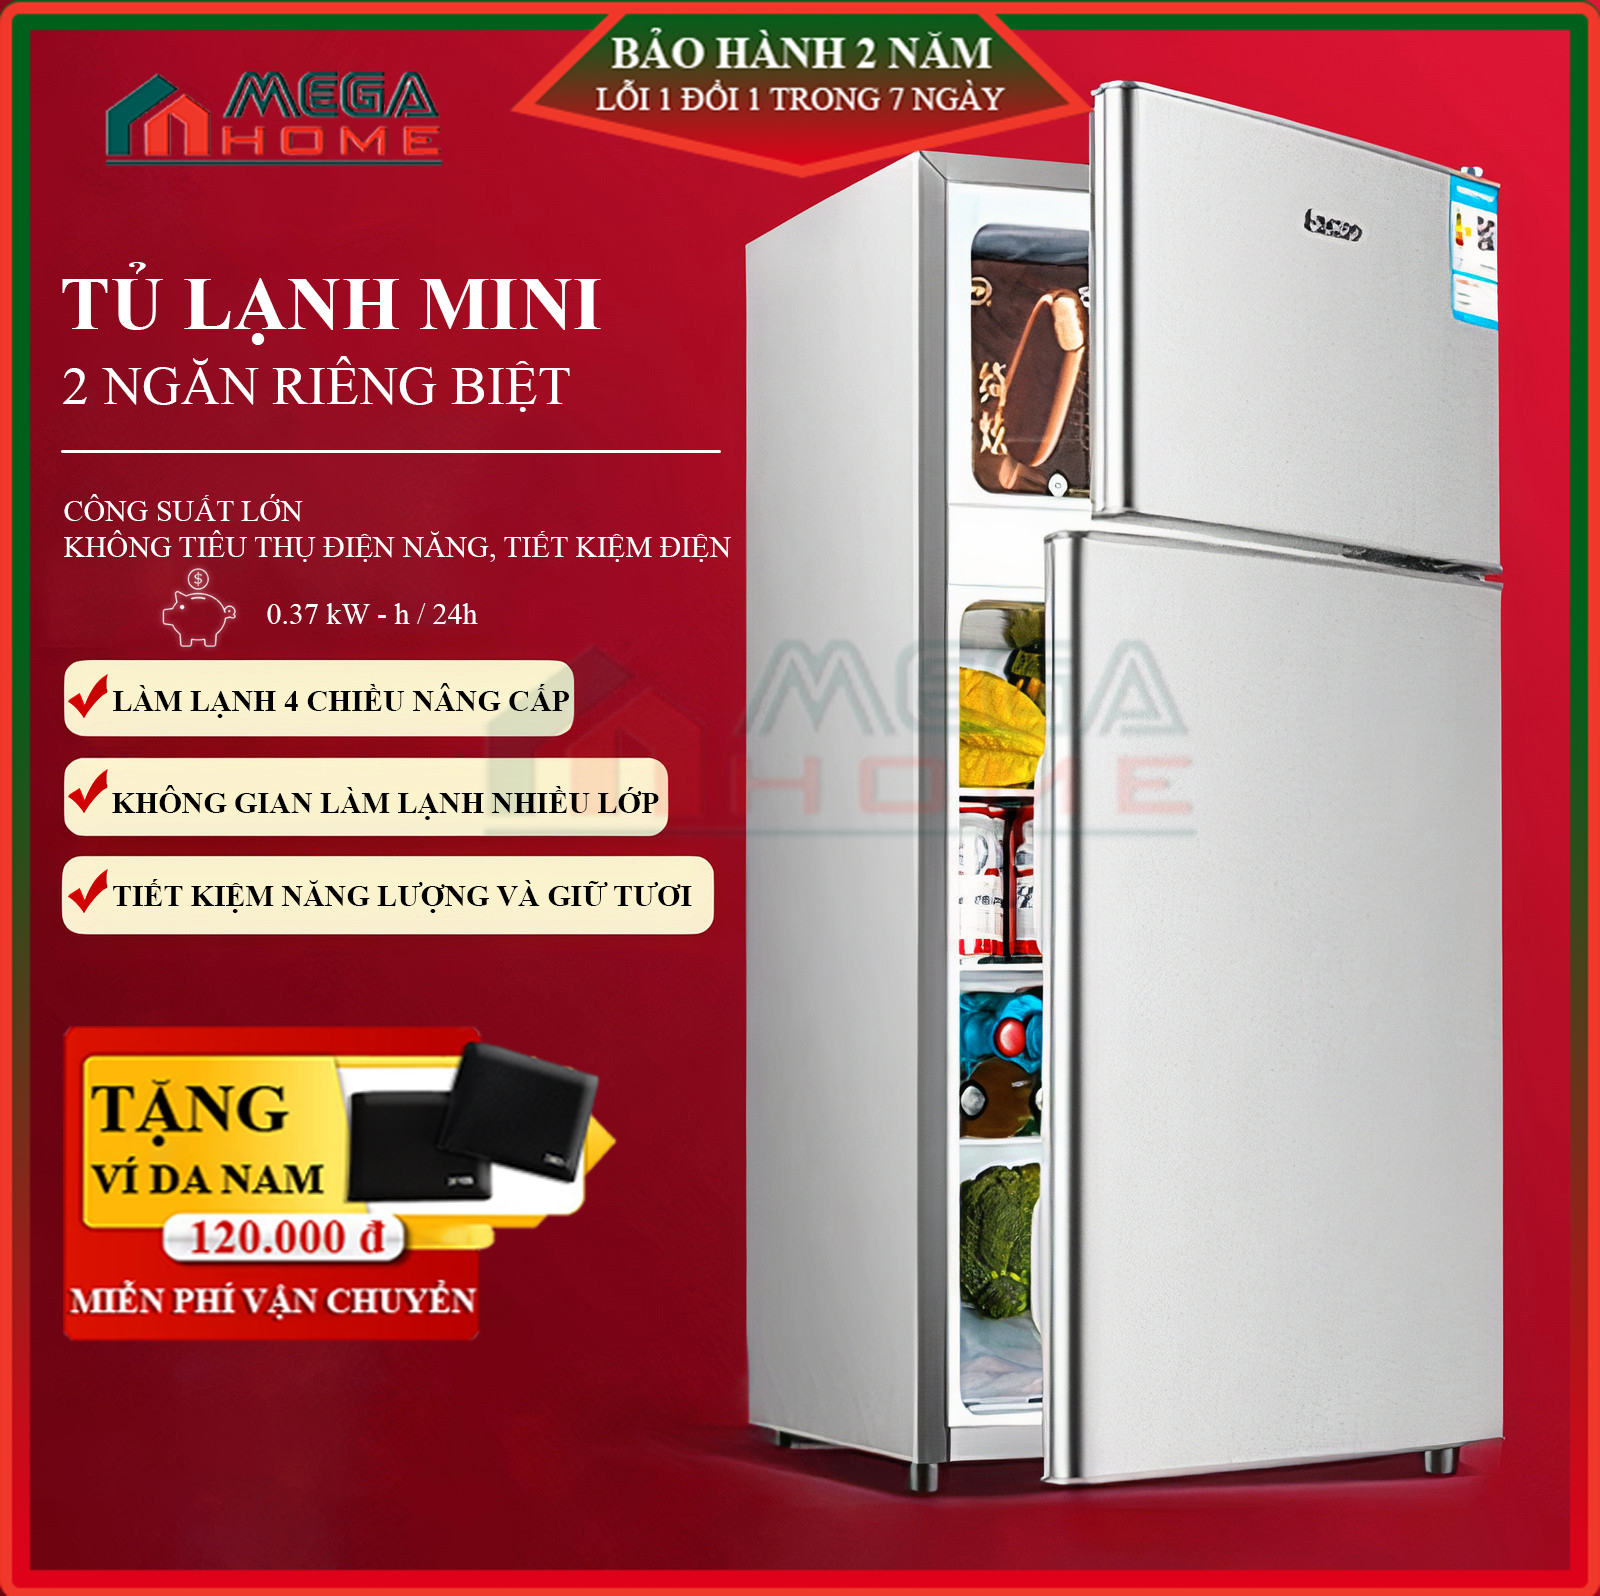 Top 7 Tủ Lạnh Mini 2 Cửa Giá Rẻ, Tiết Kiệm Điện | Nguyễn Kim | Nguyễn Kim  Blog